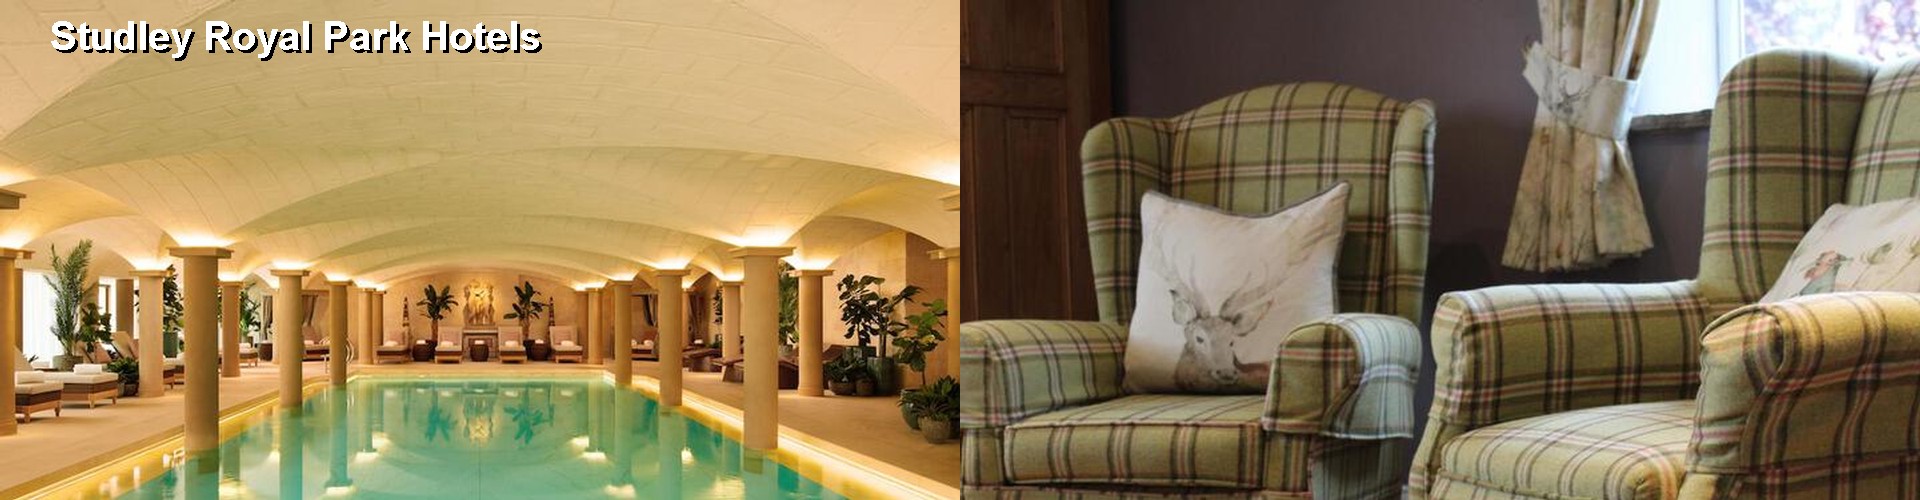 5 Best Hotels near Studley Royal Park